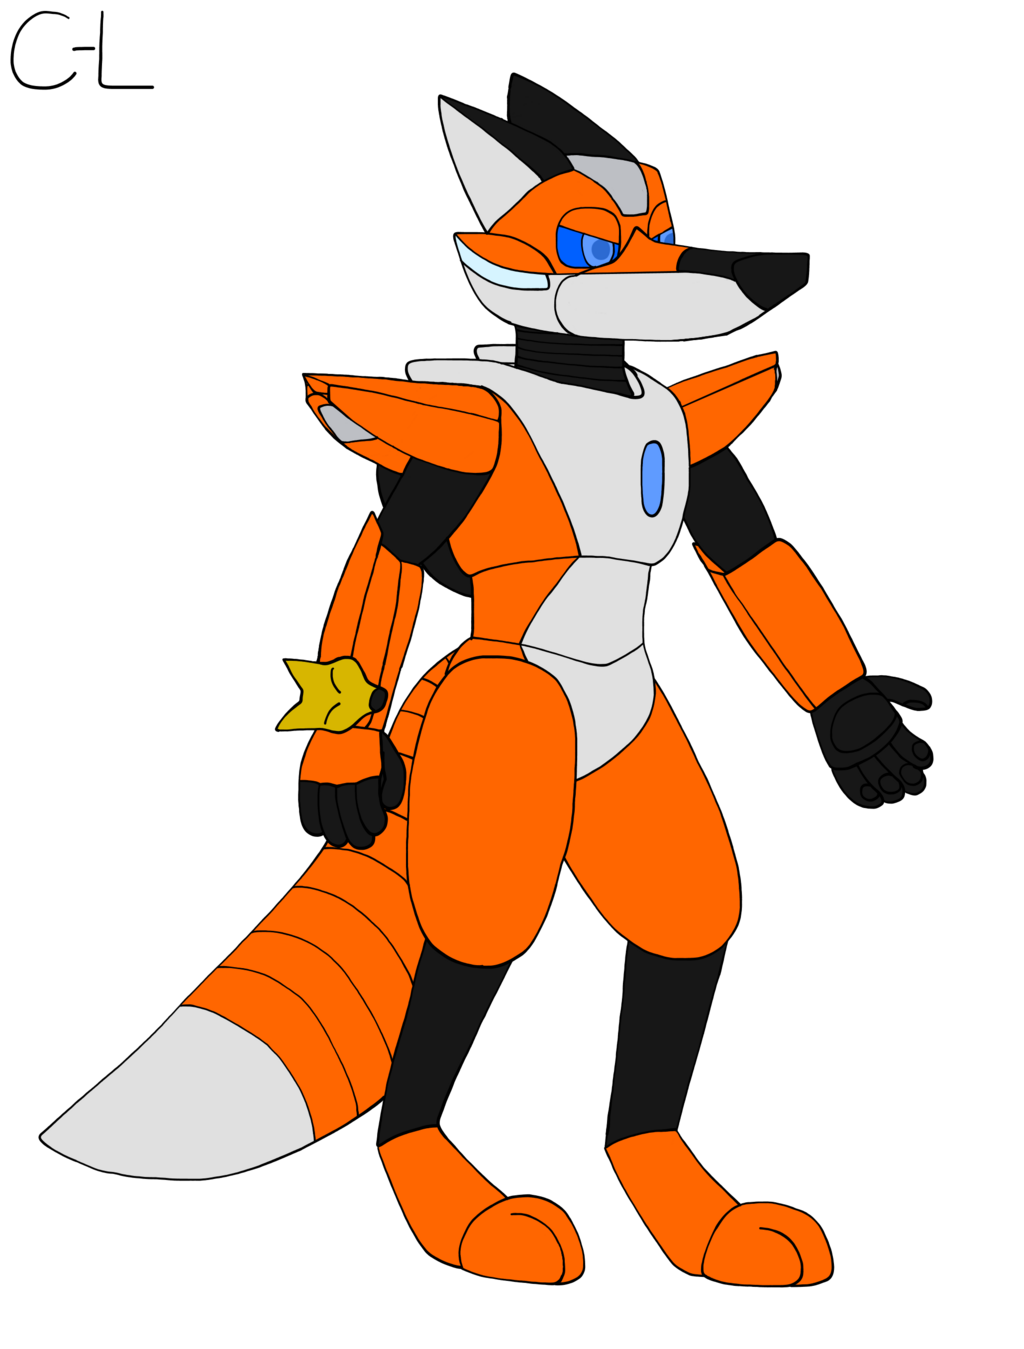 [Art Trade] Rev the Robot Fox